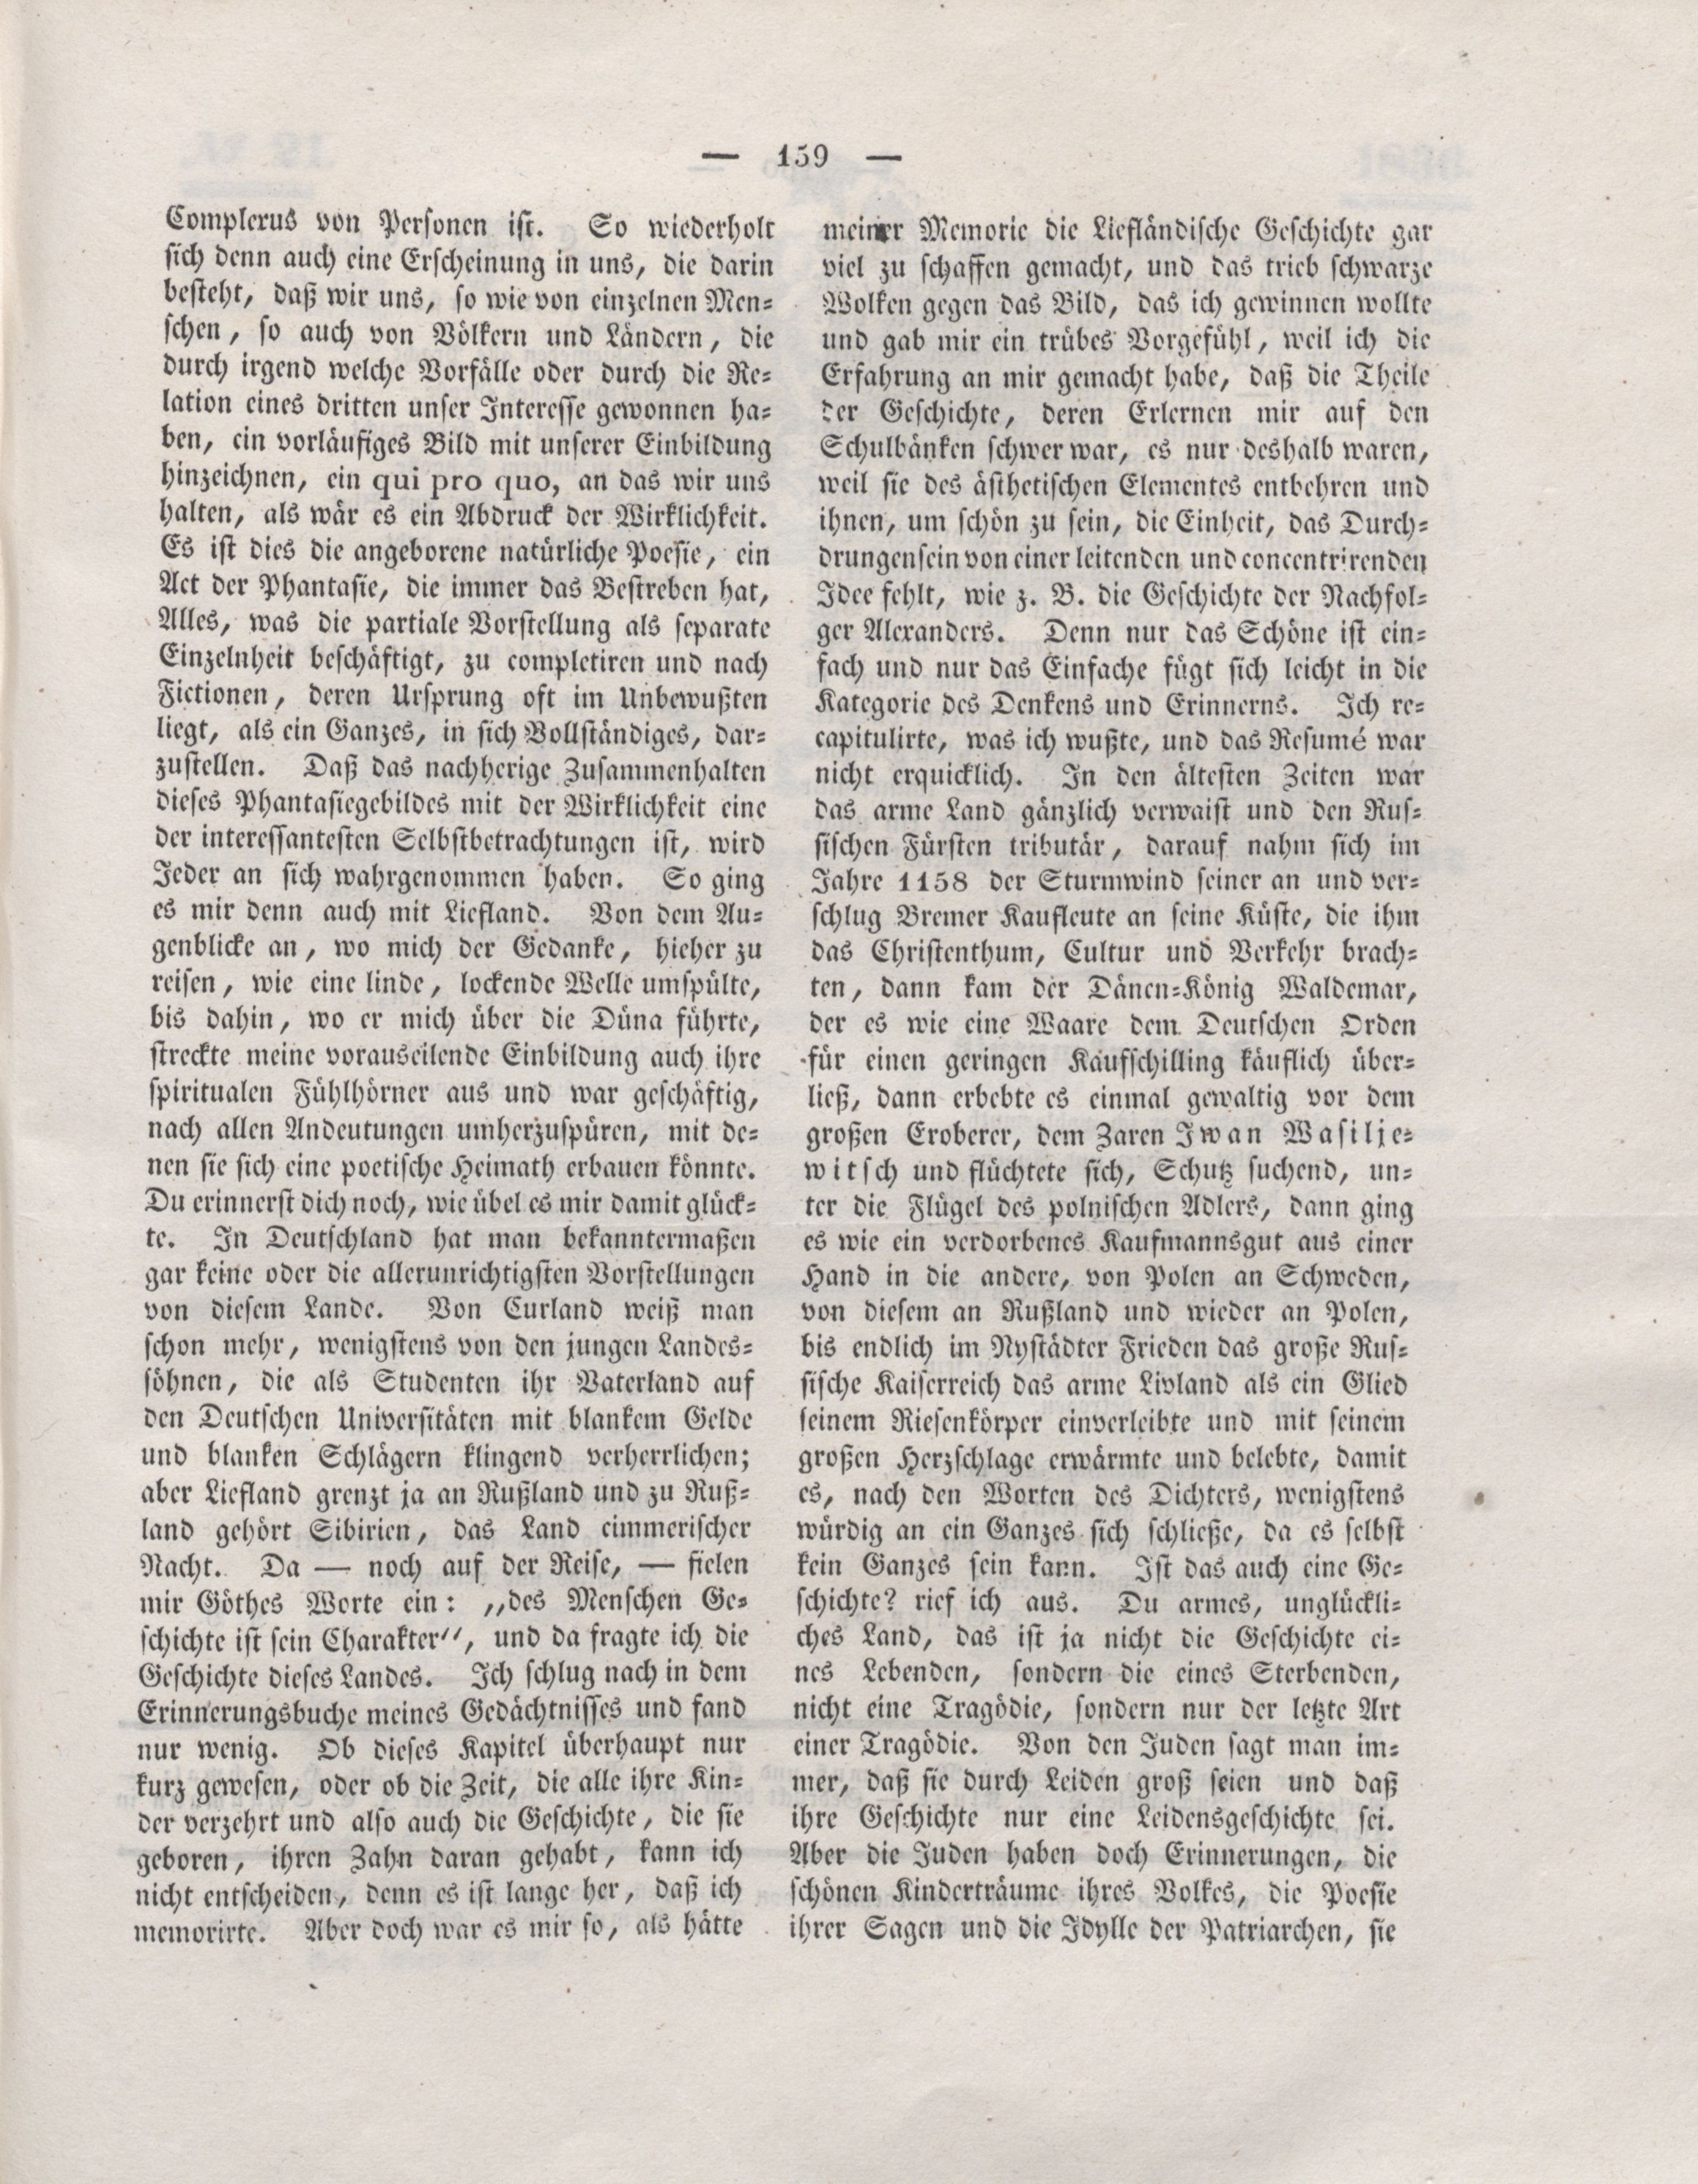 Der Refraktor [1836] (1836) | 160. (159) Основной текст